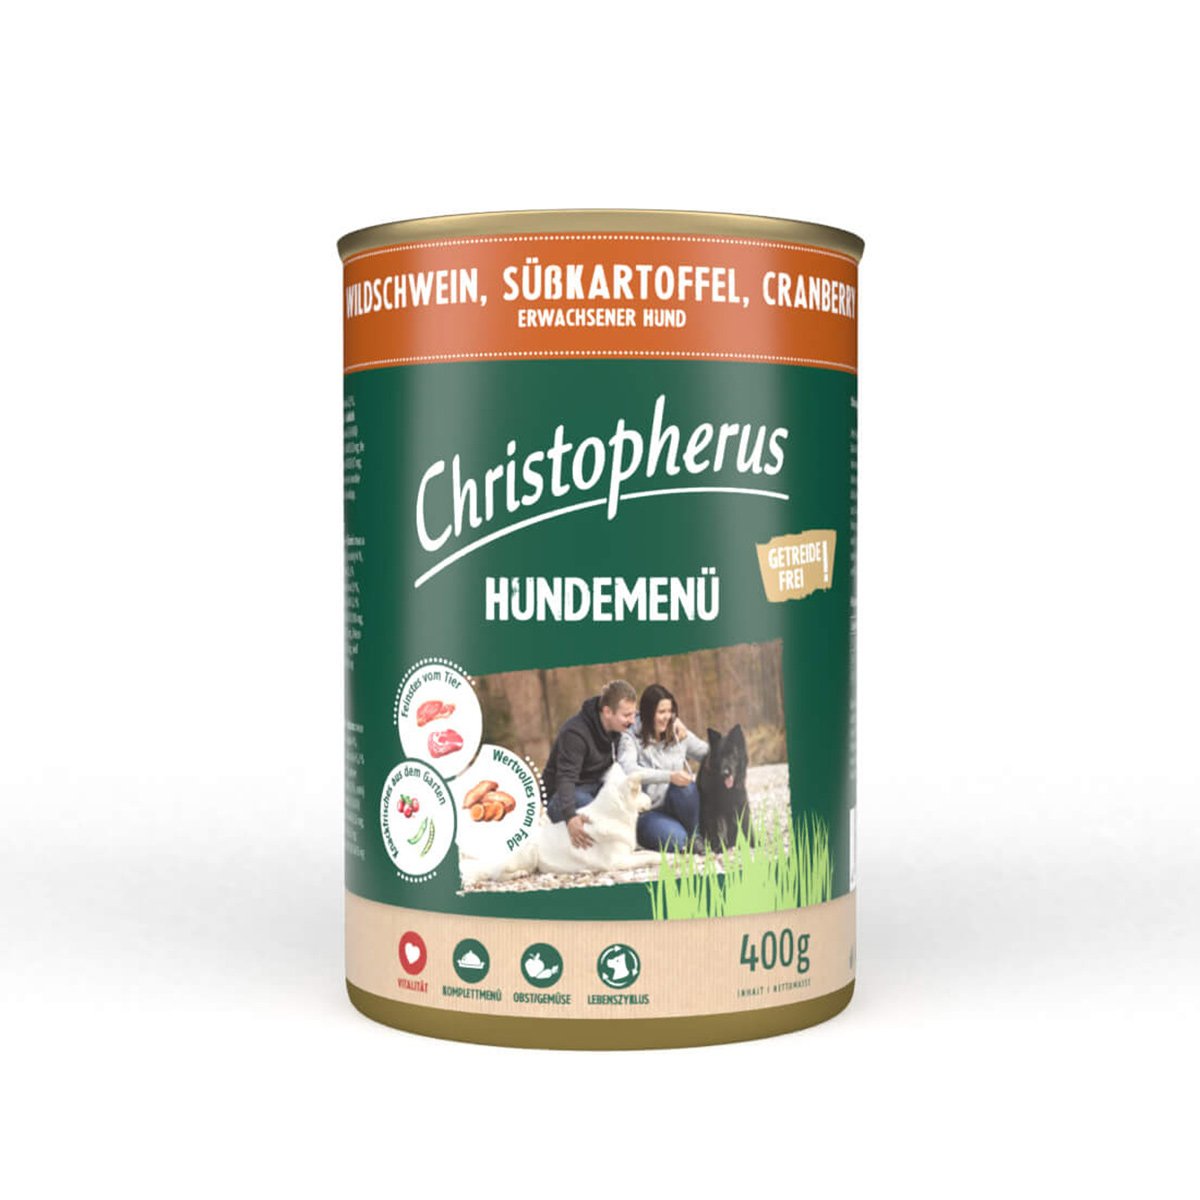 Christopherus Hundemenü mit Wildschwein, Süßkartoffel und Cranberry 24x400g von Christopherus